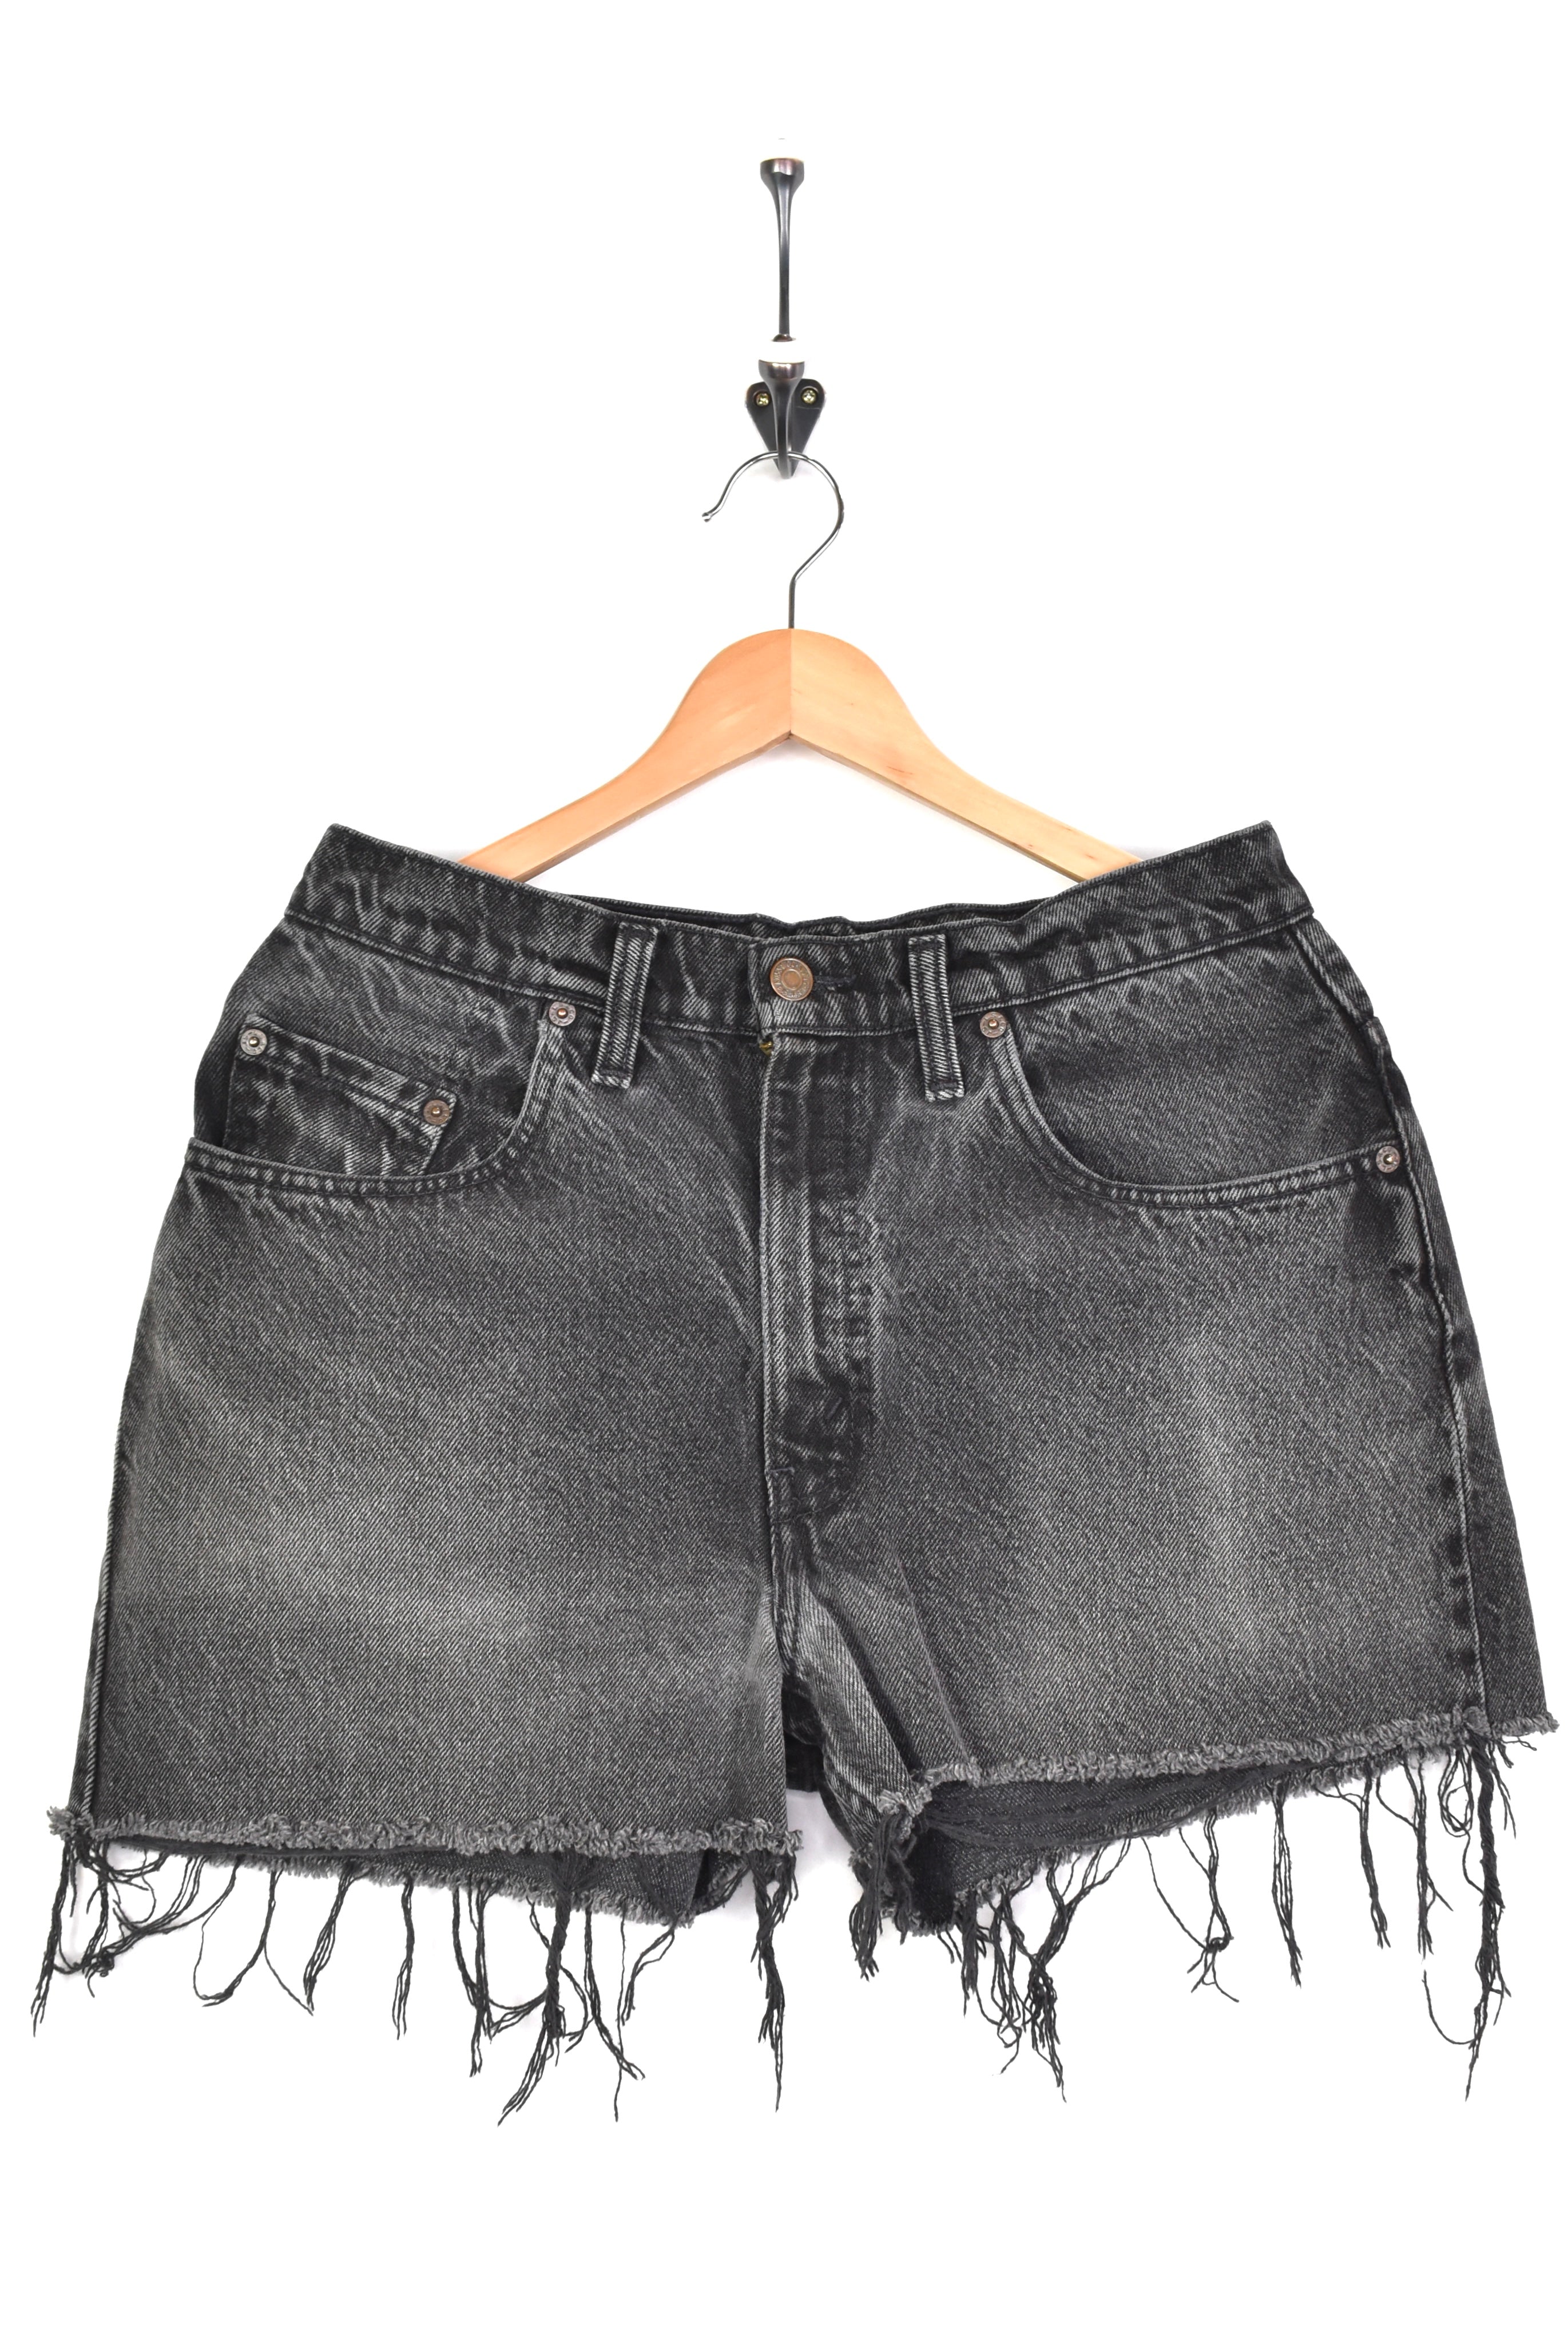 Women's vintage Levi's shorts, rework denim jeans - black, W30" LEVIS